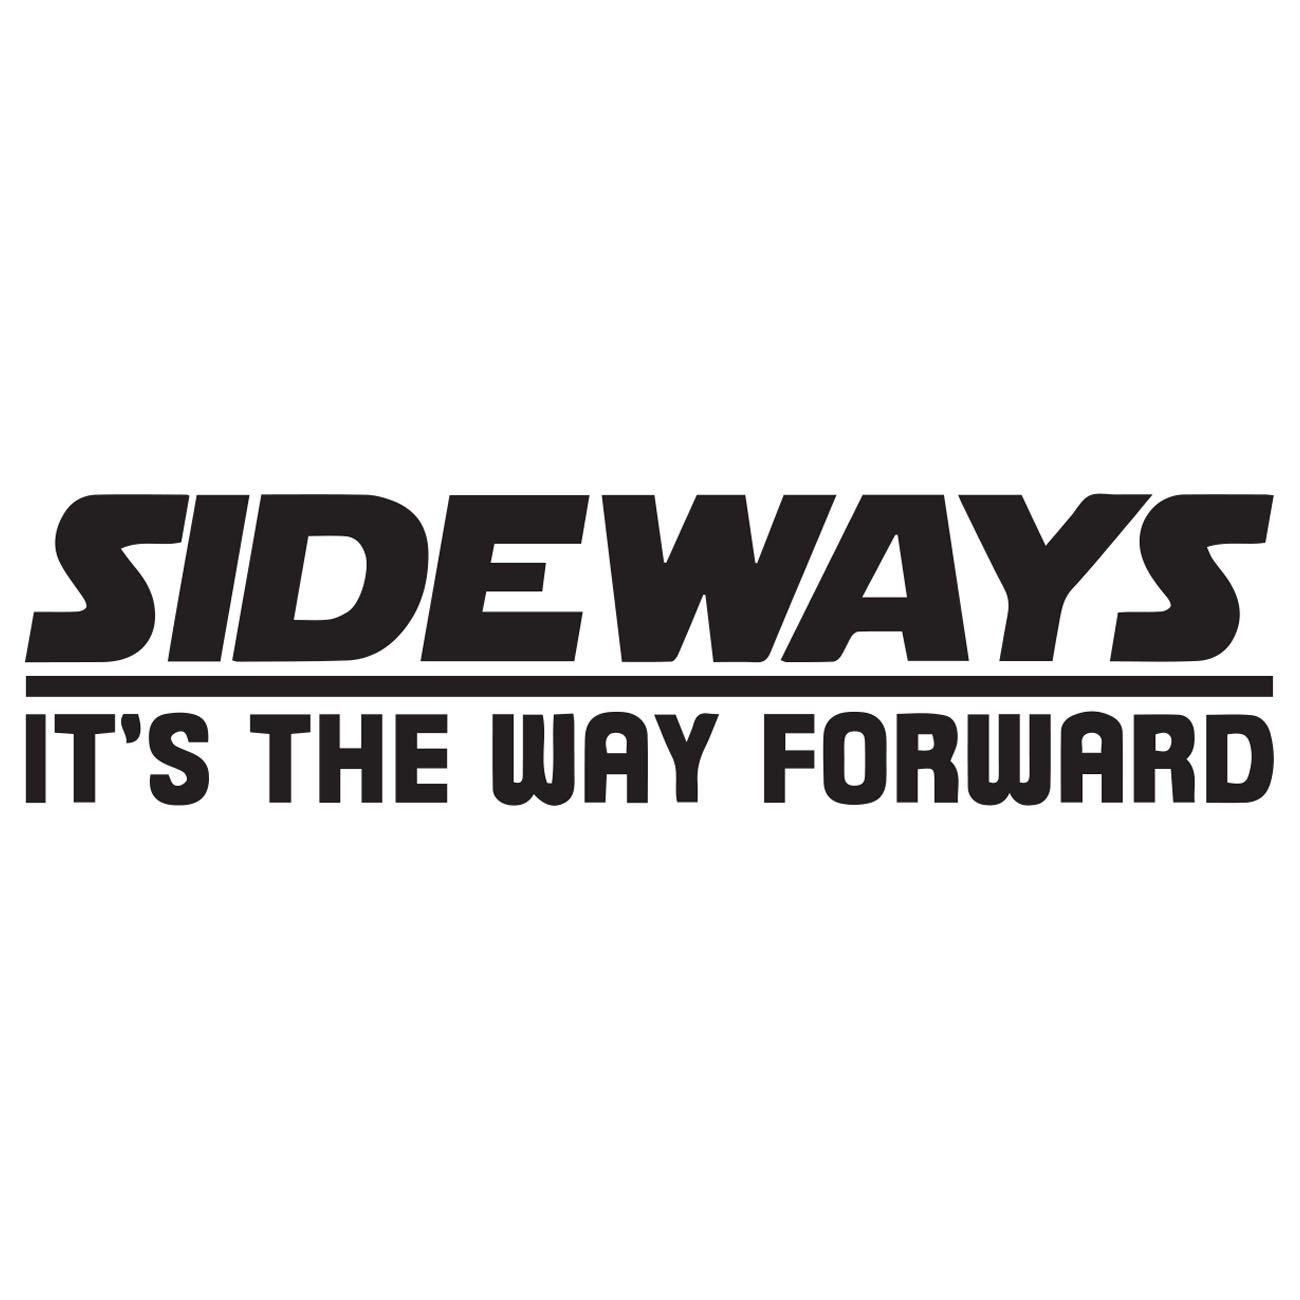 Sideways - Its the way forward